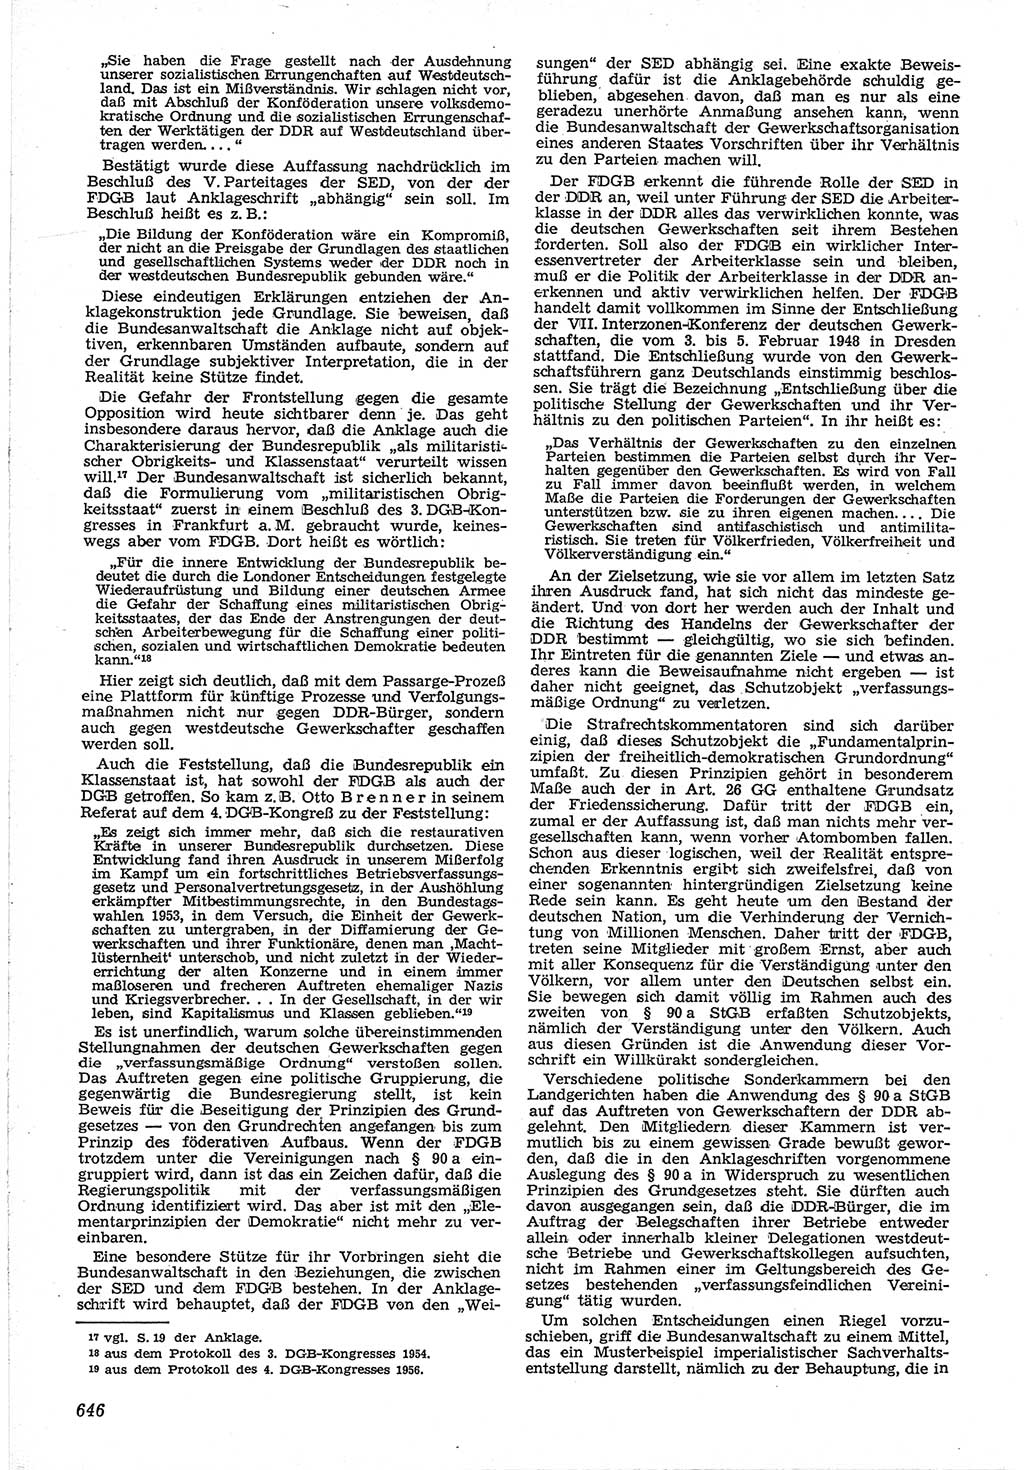 Neue Justiz (NJ), Zeitschrift für Recht und Rechtswissenschaft [Deutsche Demokratische Republik (DDR)], 12. Jahrgang 1958, Seite 646 (NJ DDR 1958, S. 646)